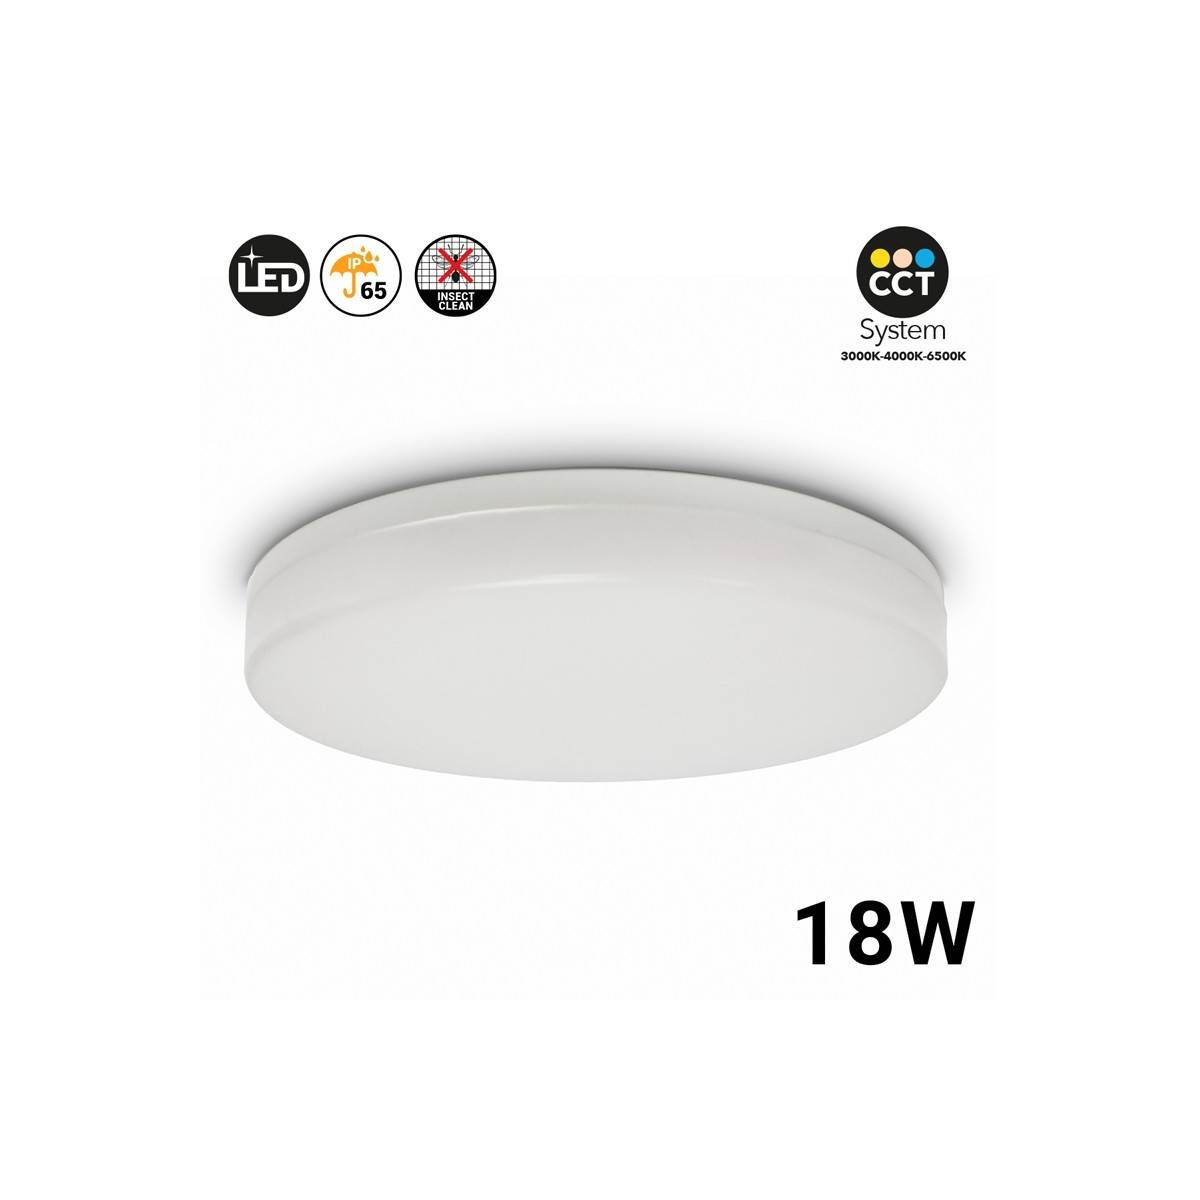 Plafon LED CCT de superfície circular de 2040LM - 18W- IP65